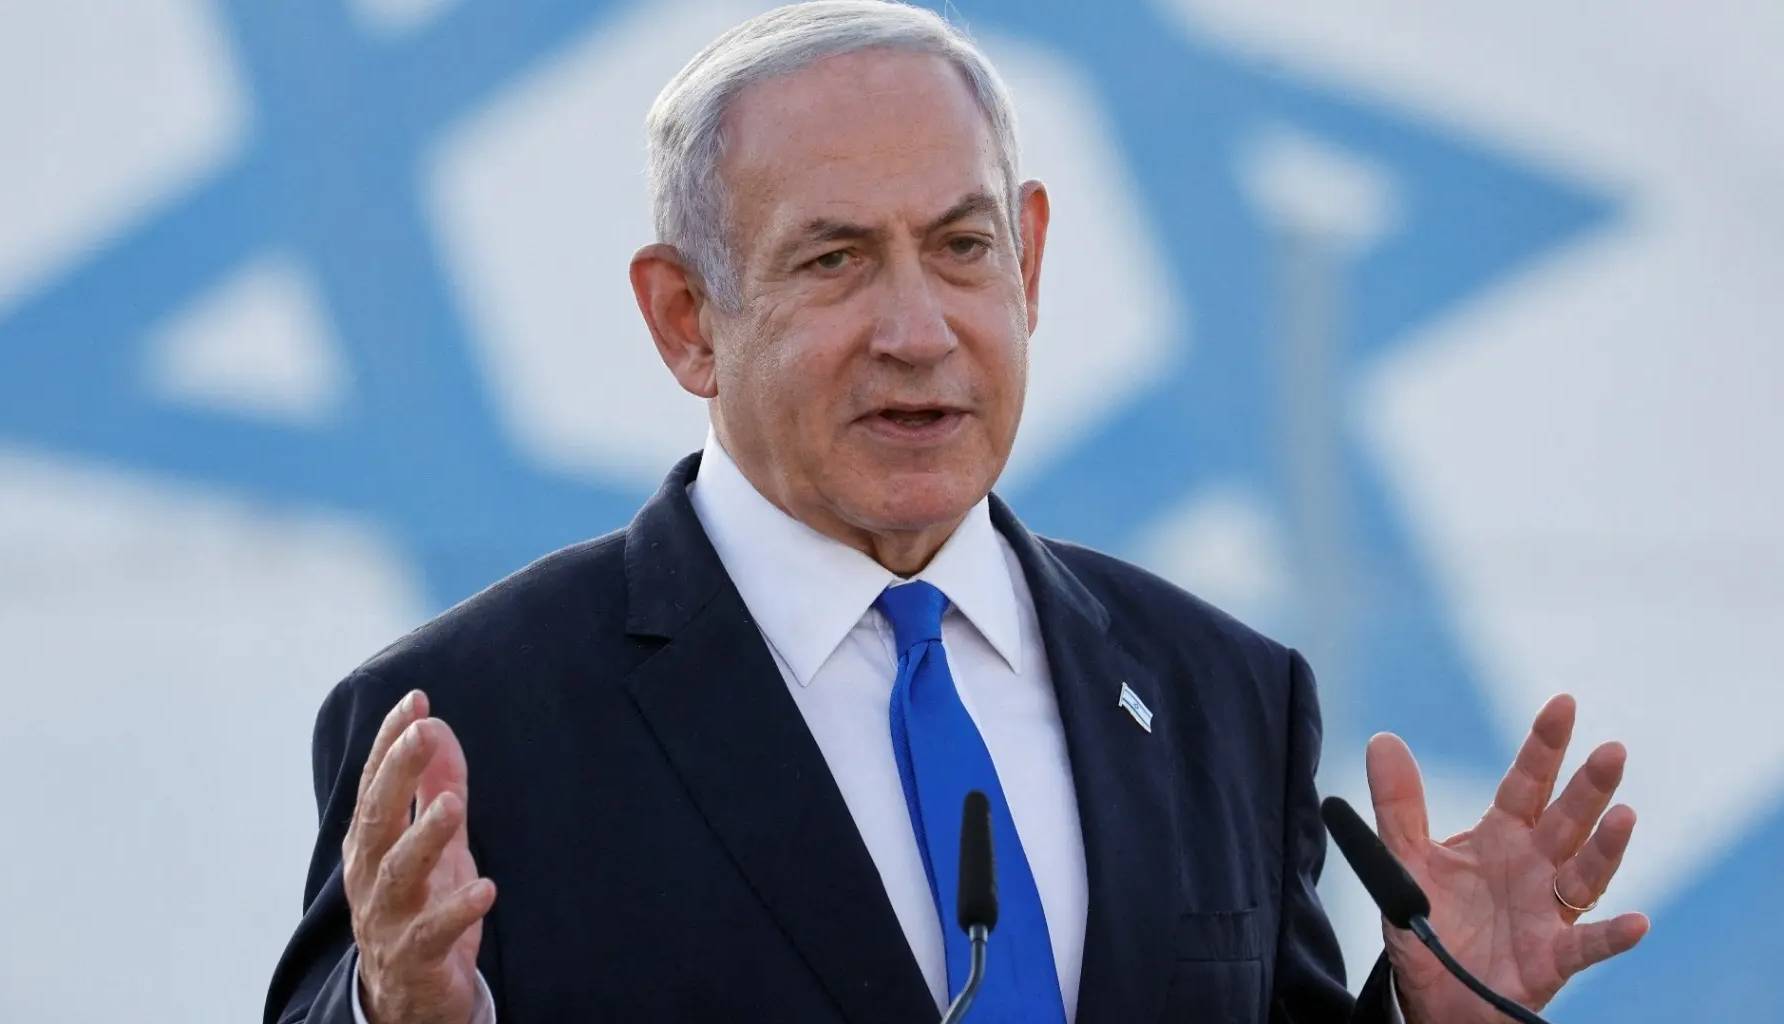 نفرین 80 سالگی و قماری که نتانیاهو با اسرائیل کرد